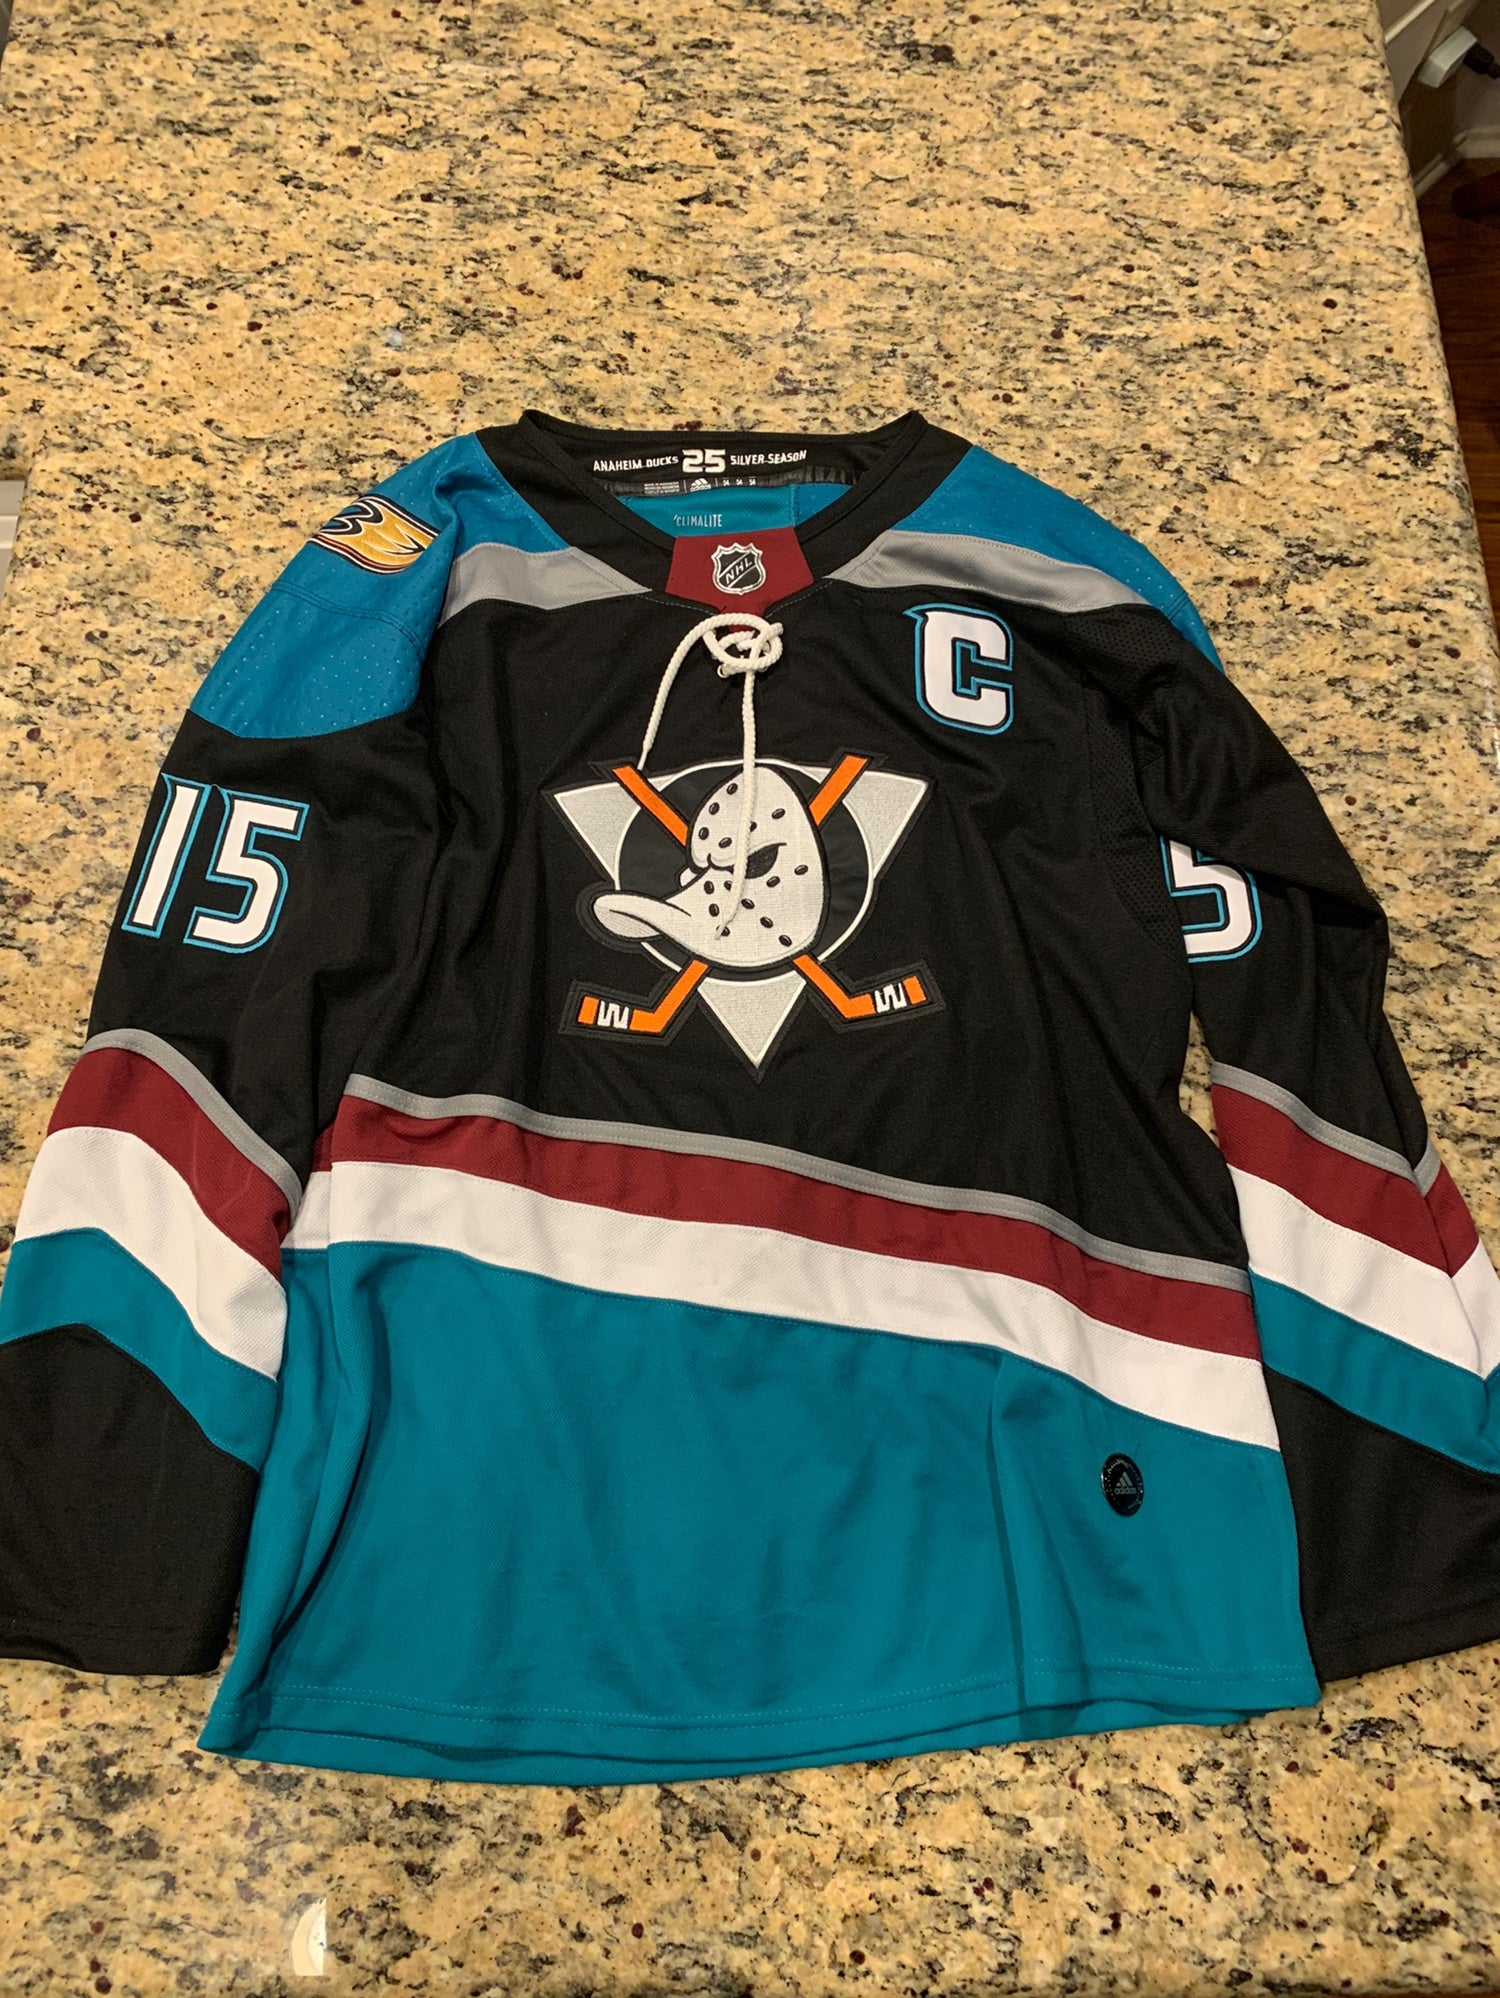 Anaheim Ducks 25th Anniversary Edition Jersey Size 54